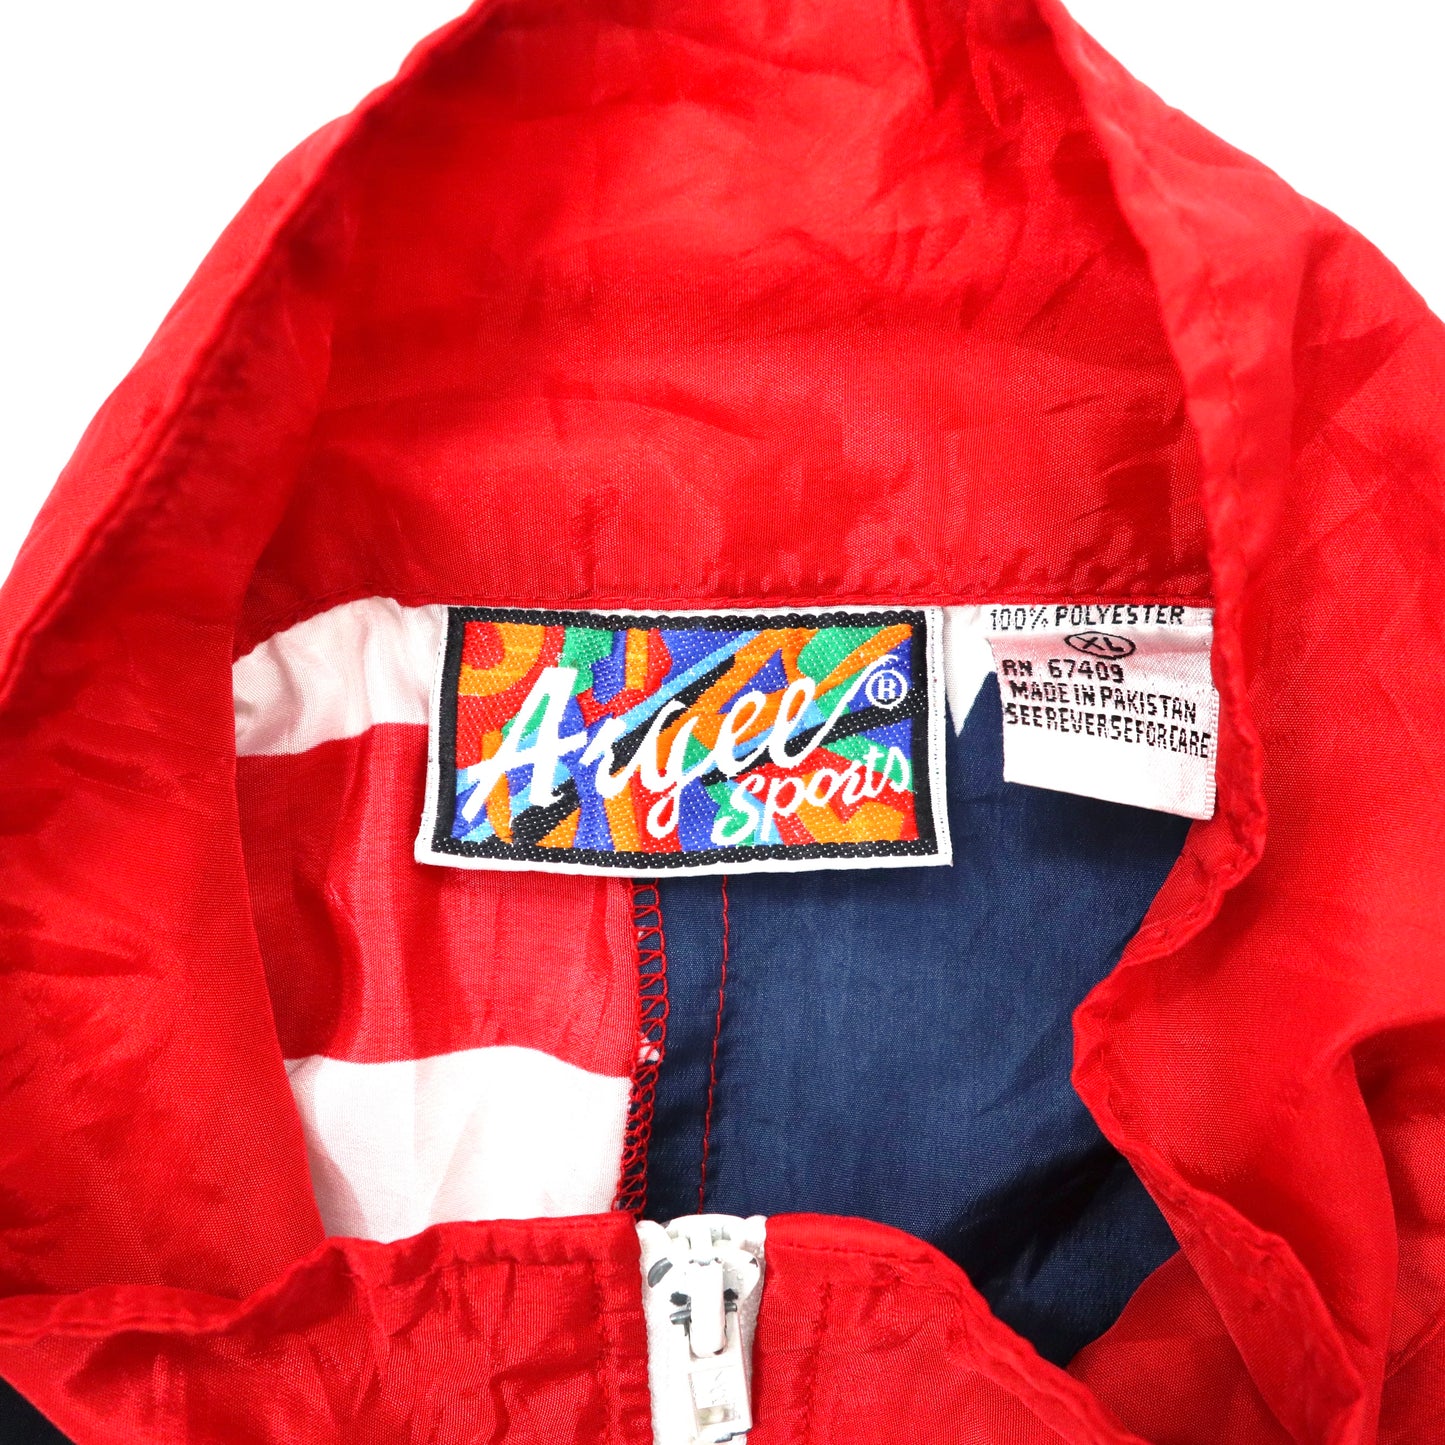 ARGEE SPORTS 総柄ナイロンジャケット XL マルチカラー 星条旗 90年代